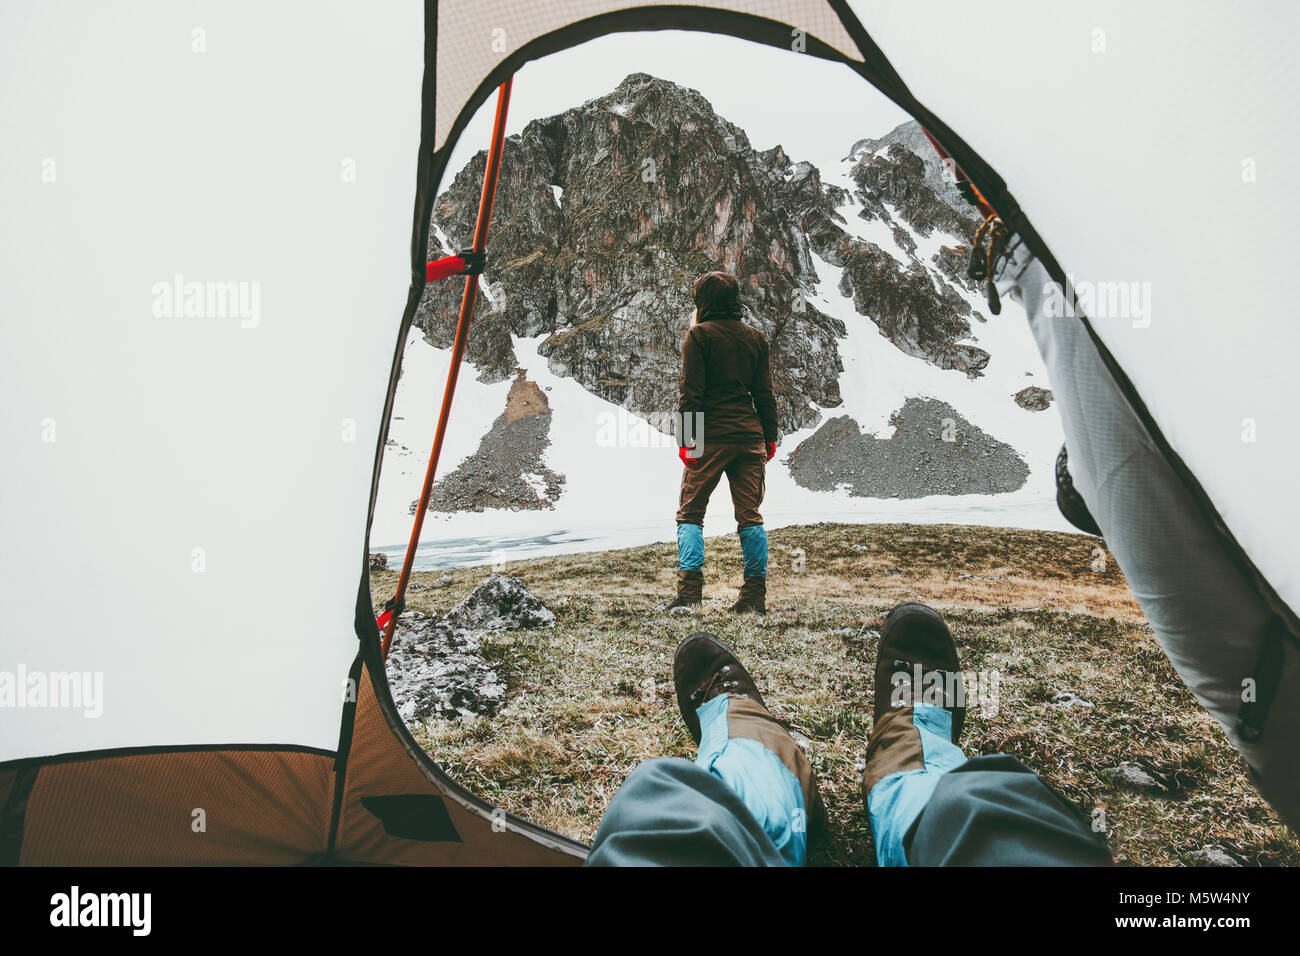 Voyages de Camping tente de voir deux femme entrée dans les montagnes à pied pieds homme intérieur concept de vie relaxant vacances d'aventure outdoor Banque D'Images